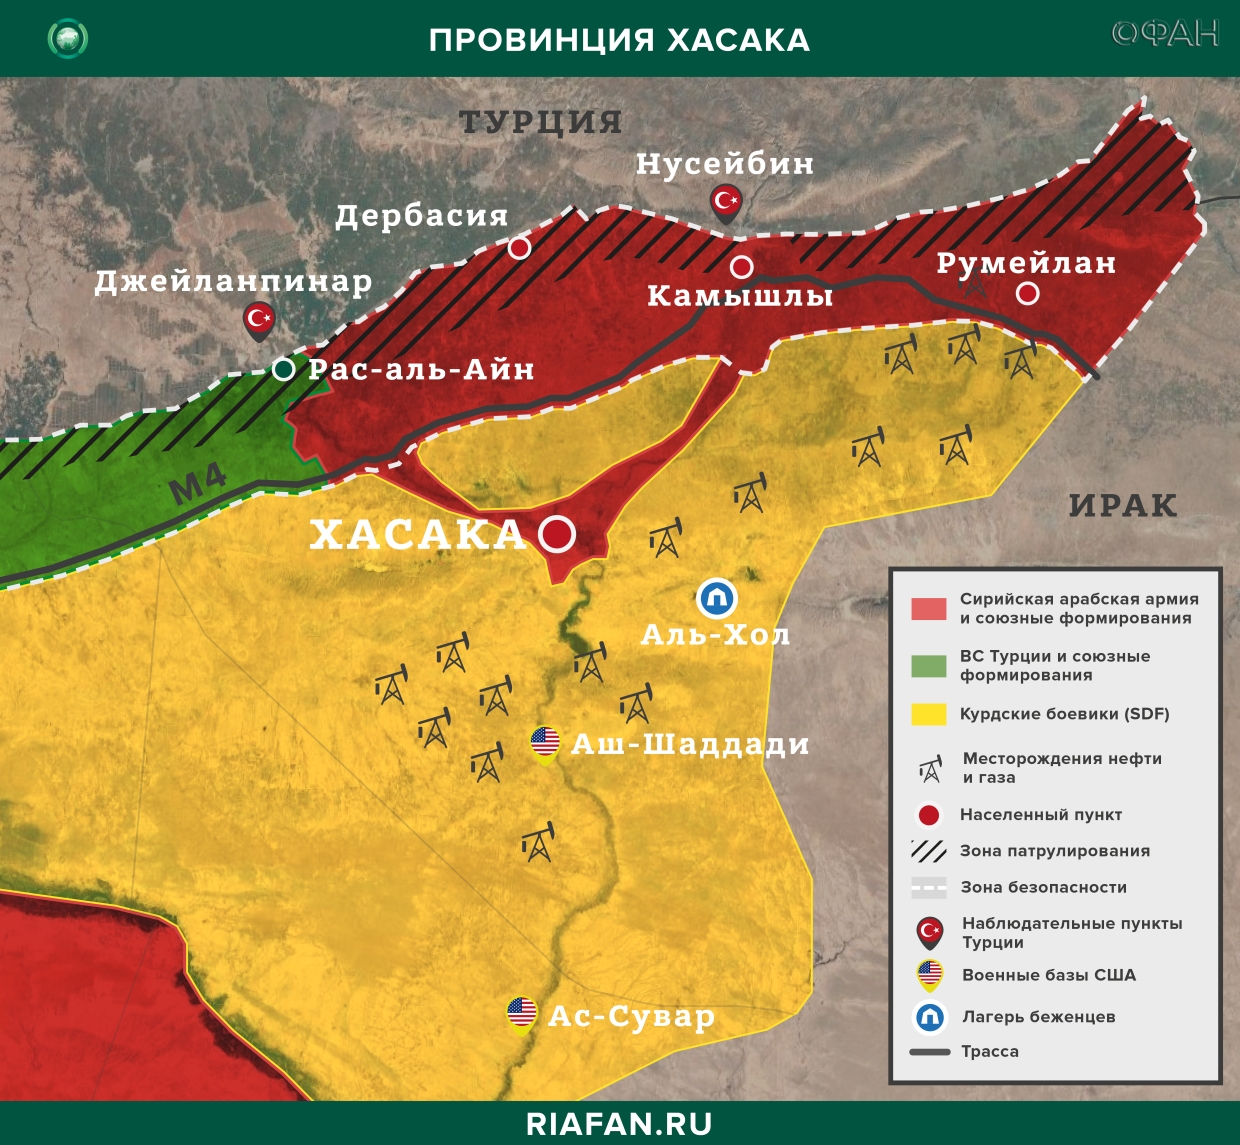 Noticias de Siria 8 Marzo 22.30: курдские боевики обстреляли мирных демонстрантов в Дейр-эз-Зоре, атака на блокпост SDF в Хасаке